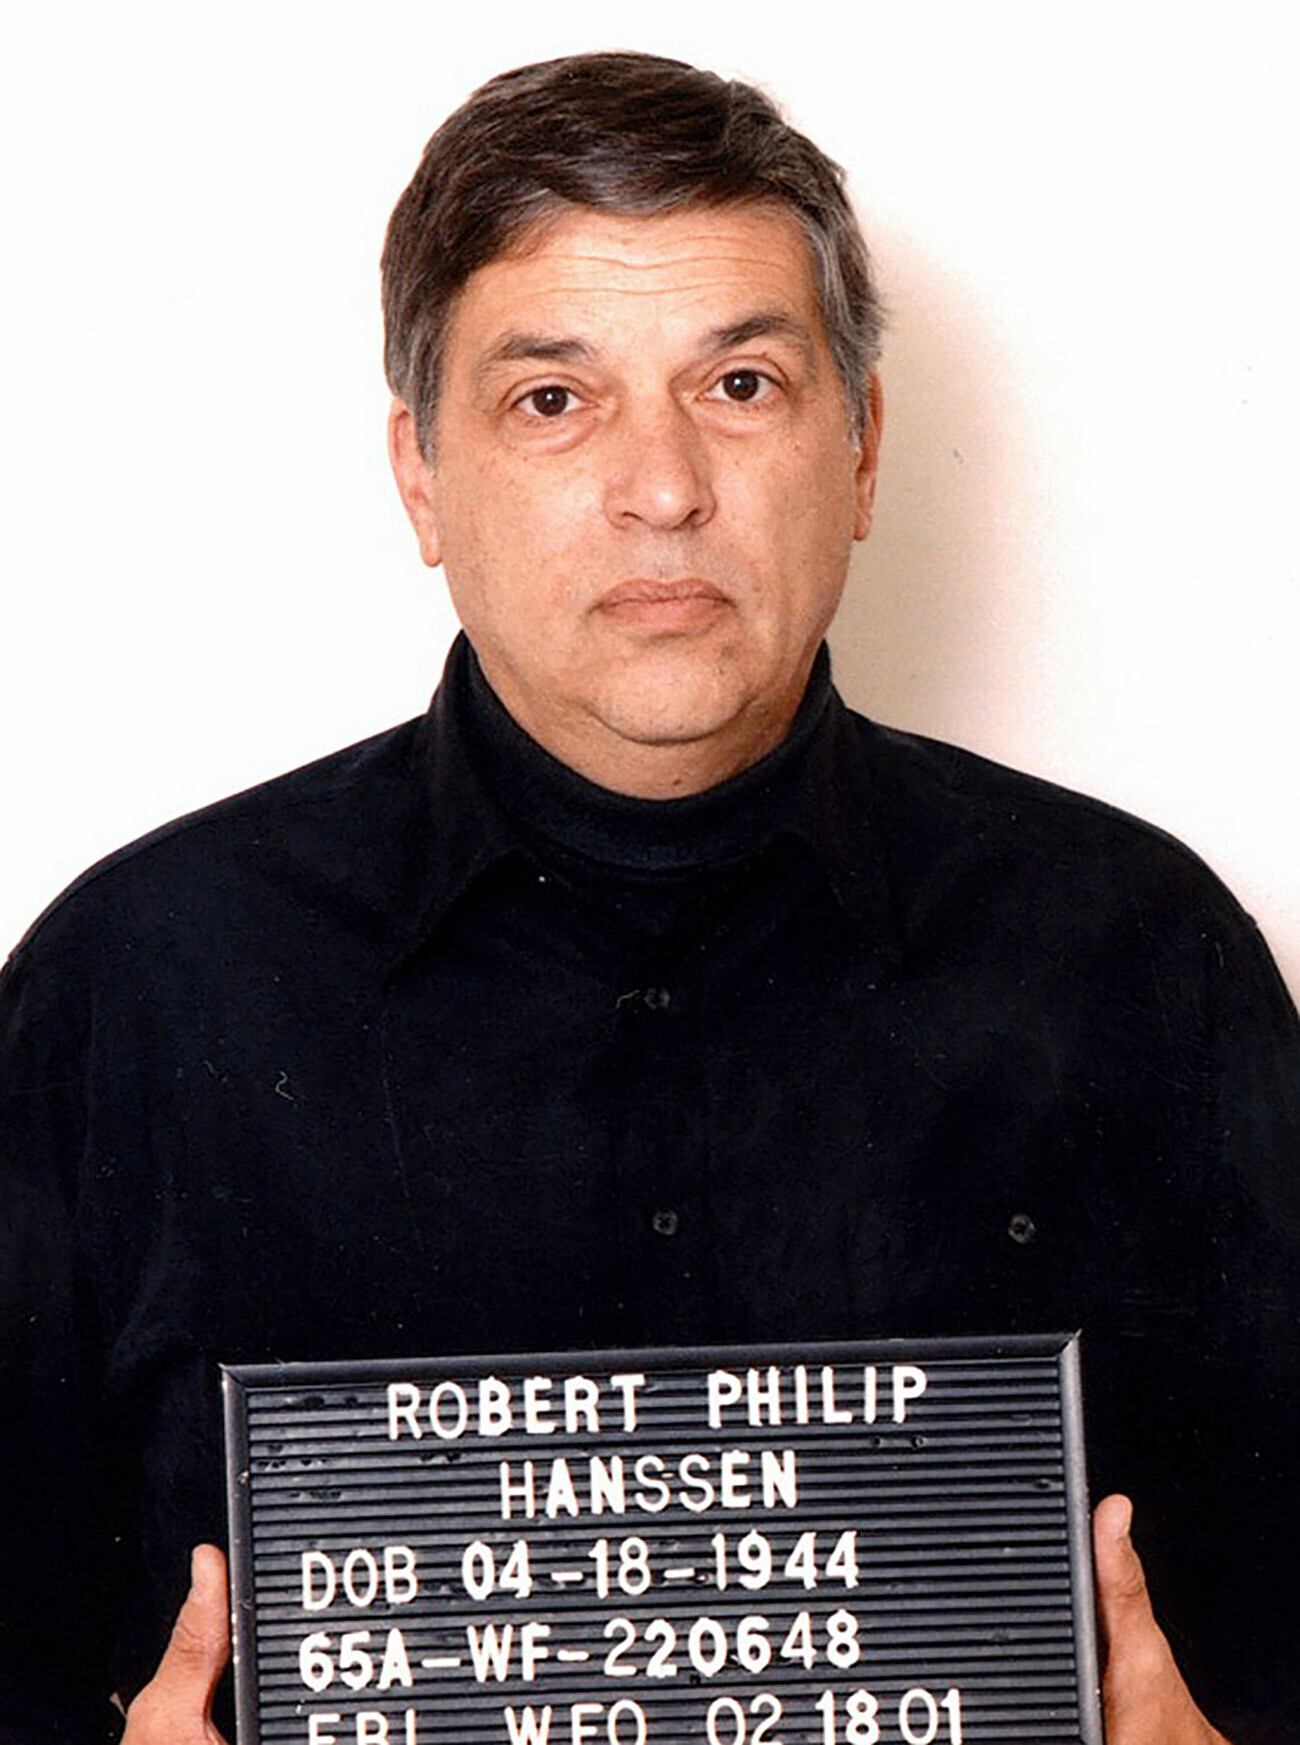 Robert Philip Hanssen; ehemaliger FBI-Agent, der wegen Spionage verurteilt wurde.
